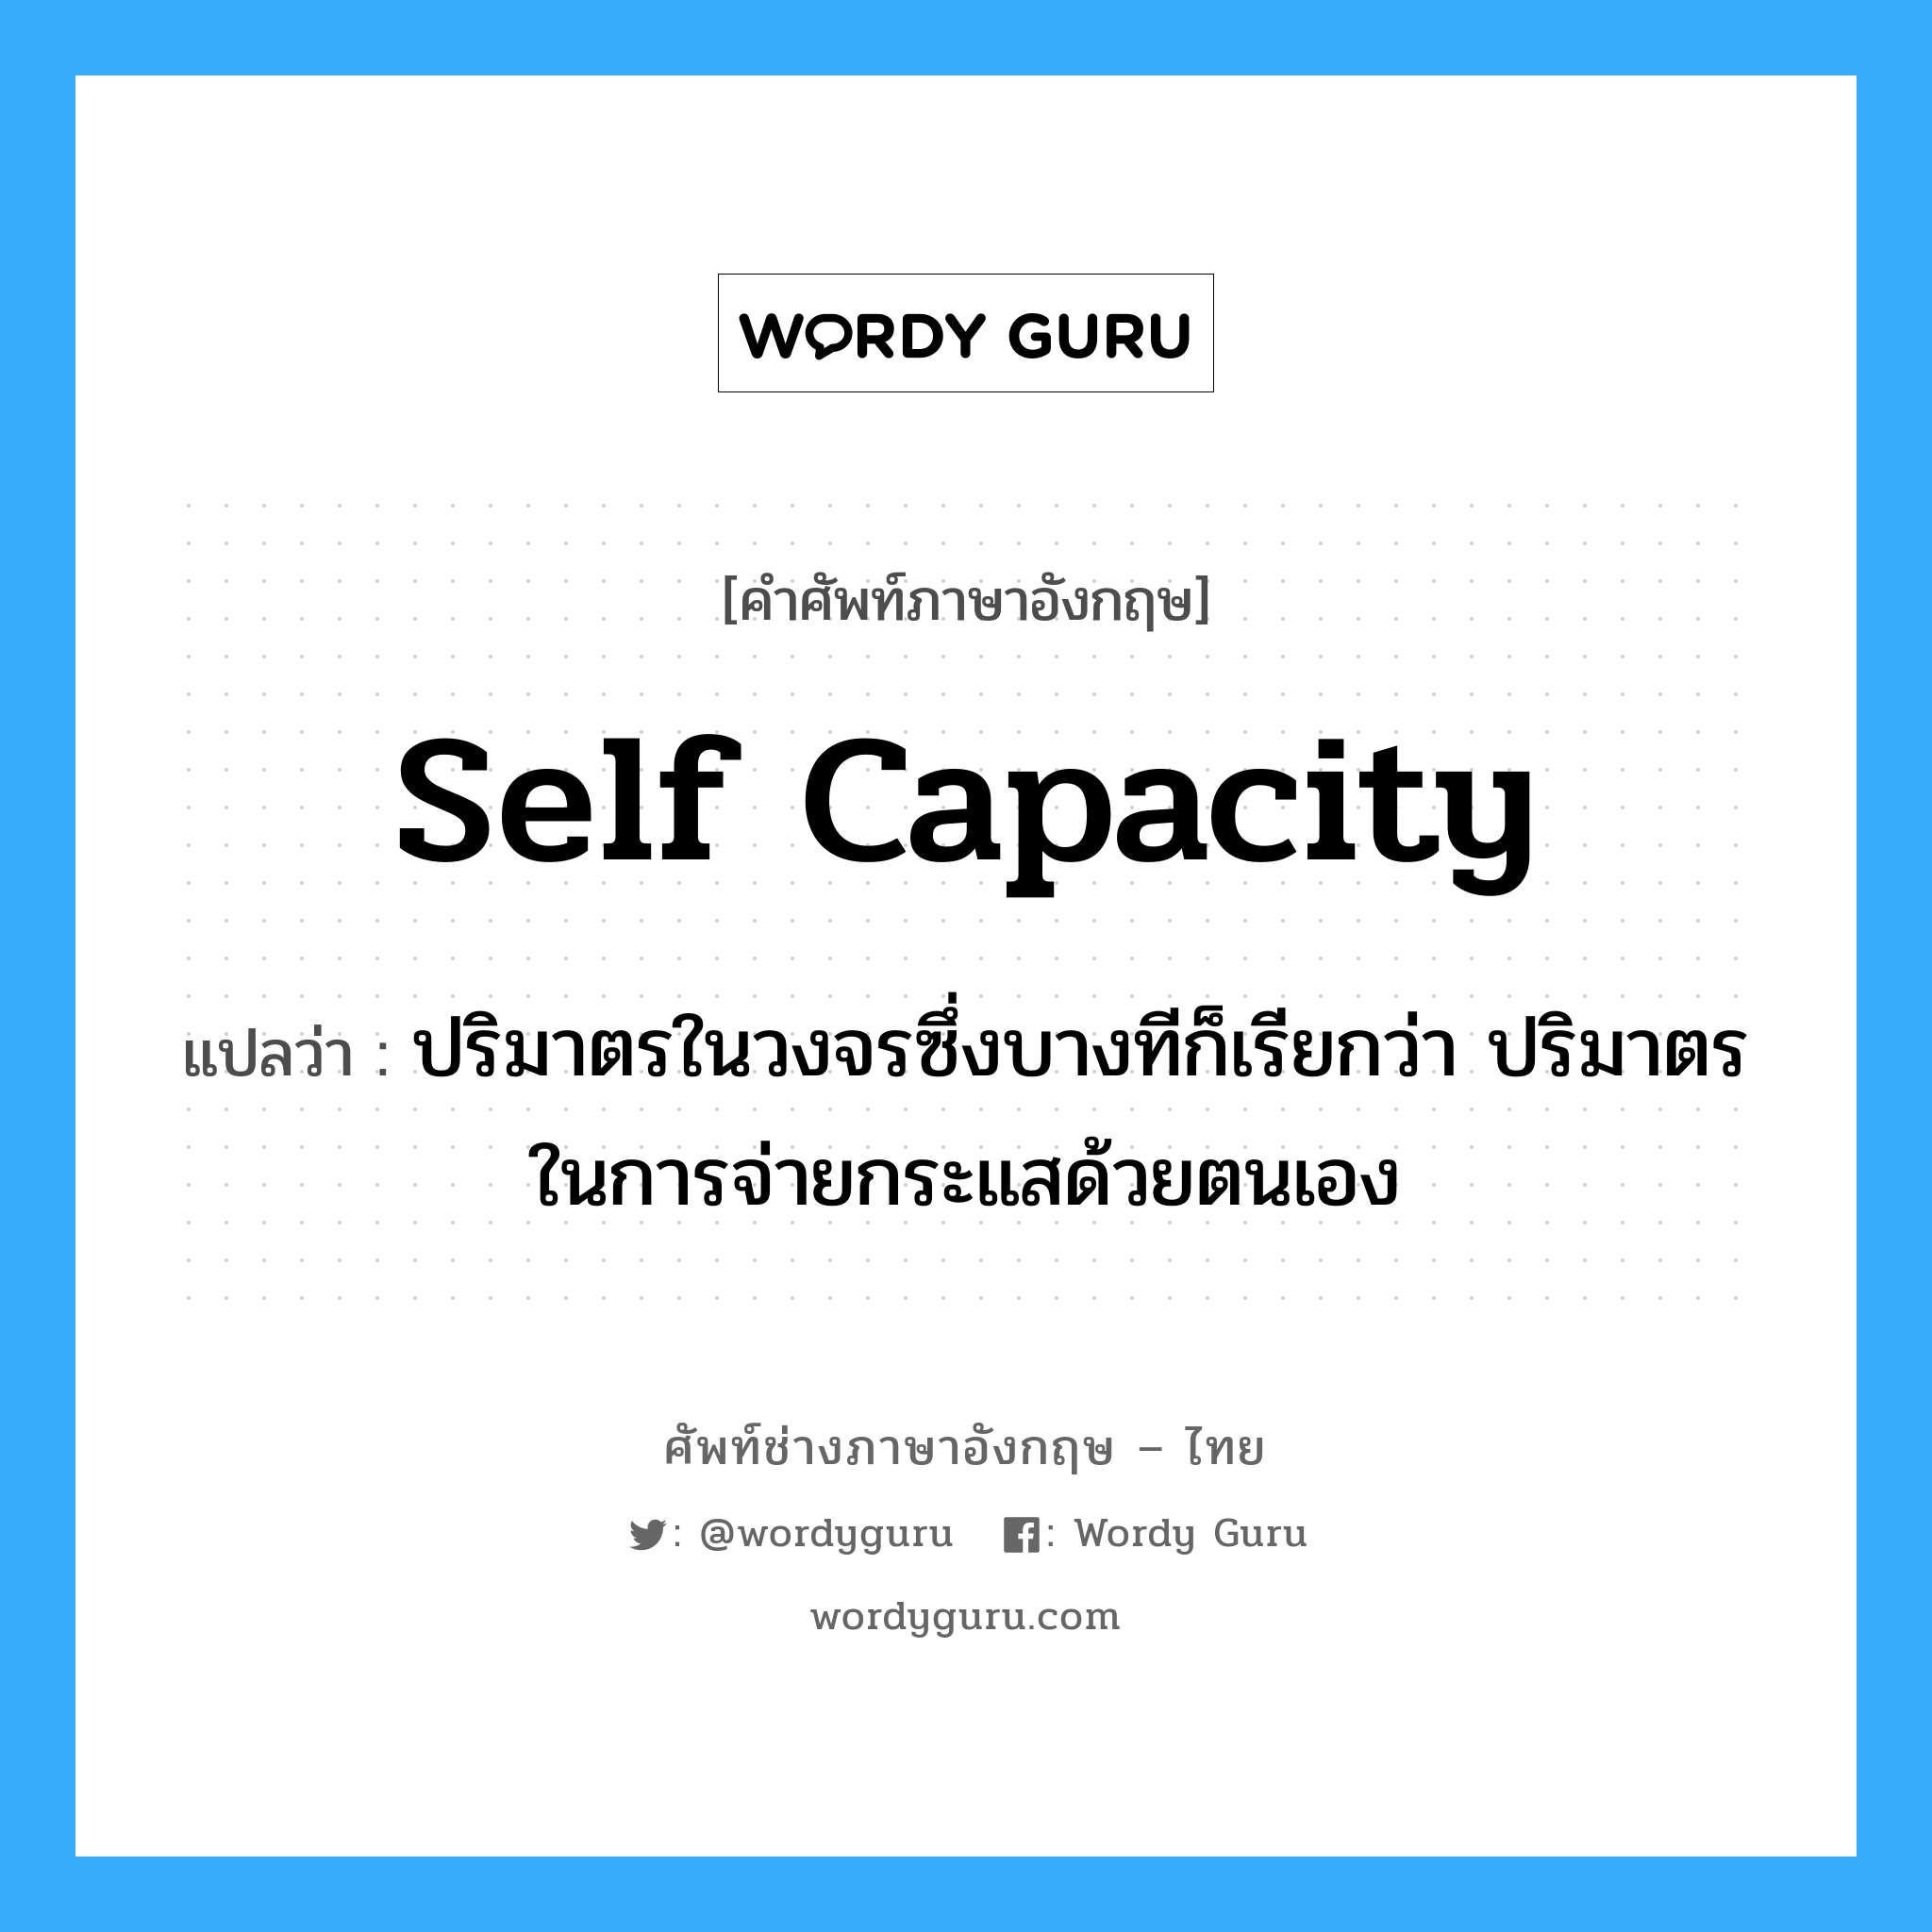 self capacity แปลว่า?, คำศัพท์ช่างภาษาอังกฤษ - ไทย self capacity คำศัพท์ภาษาอังกฤษ self capacity แปลว่า ปริมาตรในวงจรซึ่งบางทีก็เรียกว่า ปริมาตรในการจ่ายกระแสด้วยตนเอง